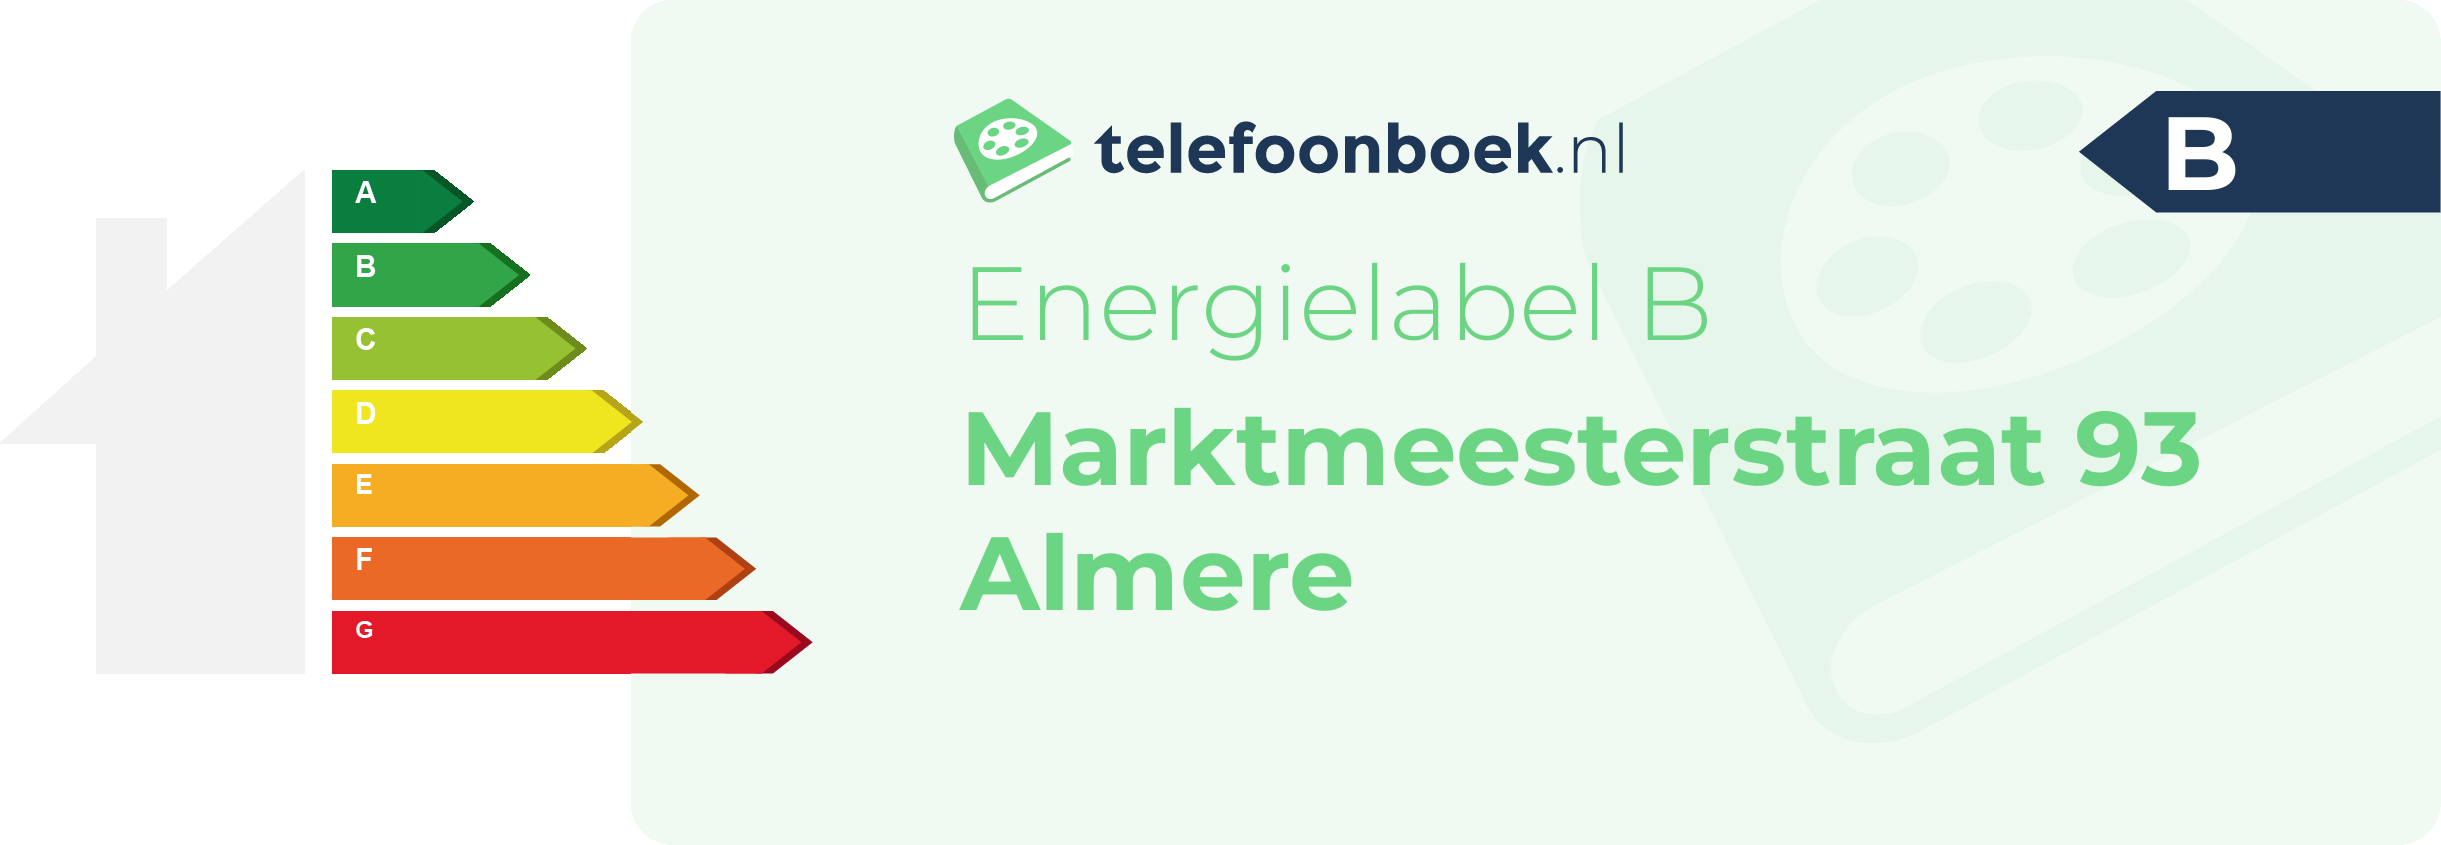 Energielabel Marktmeesterstraat 93 Almere